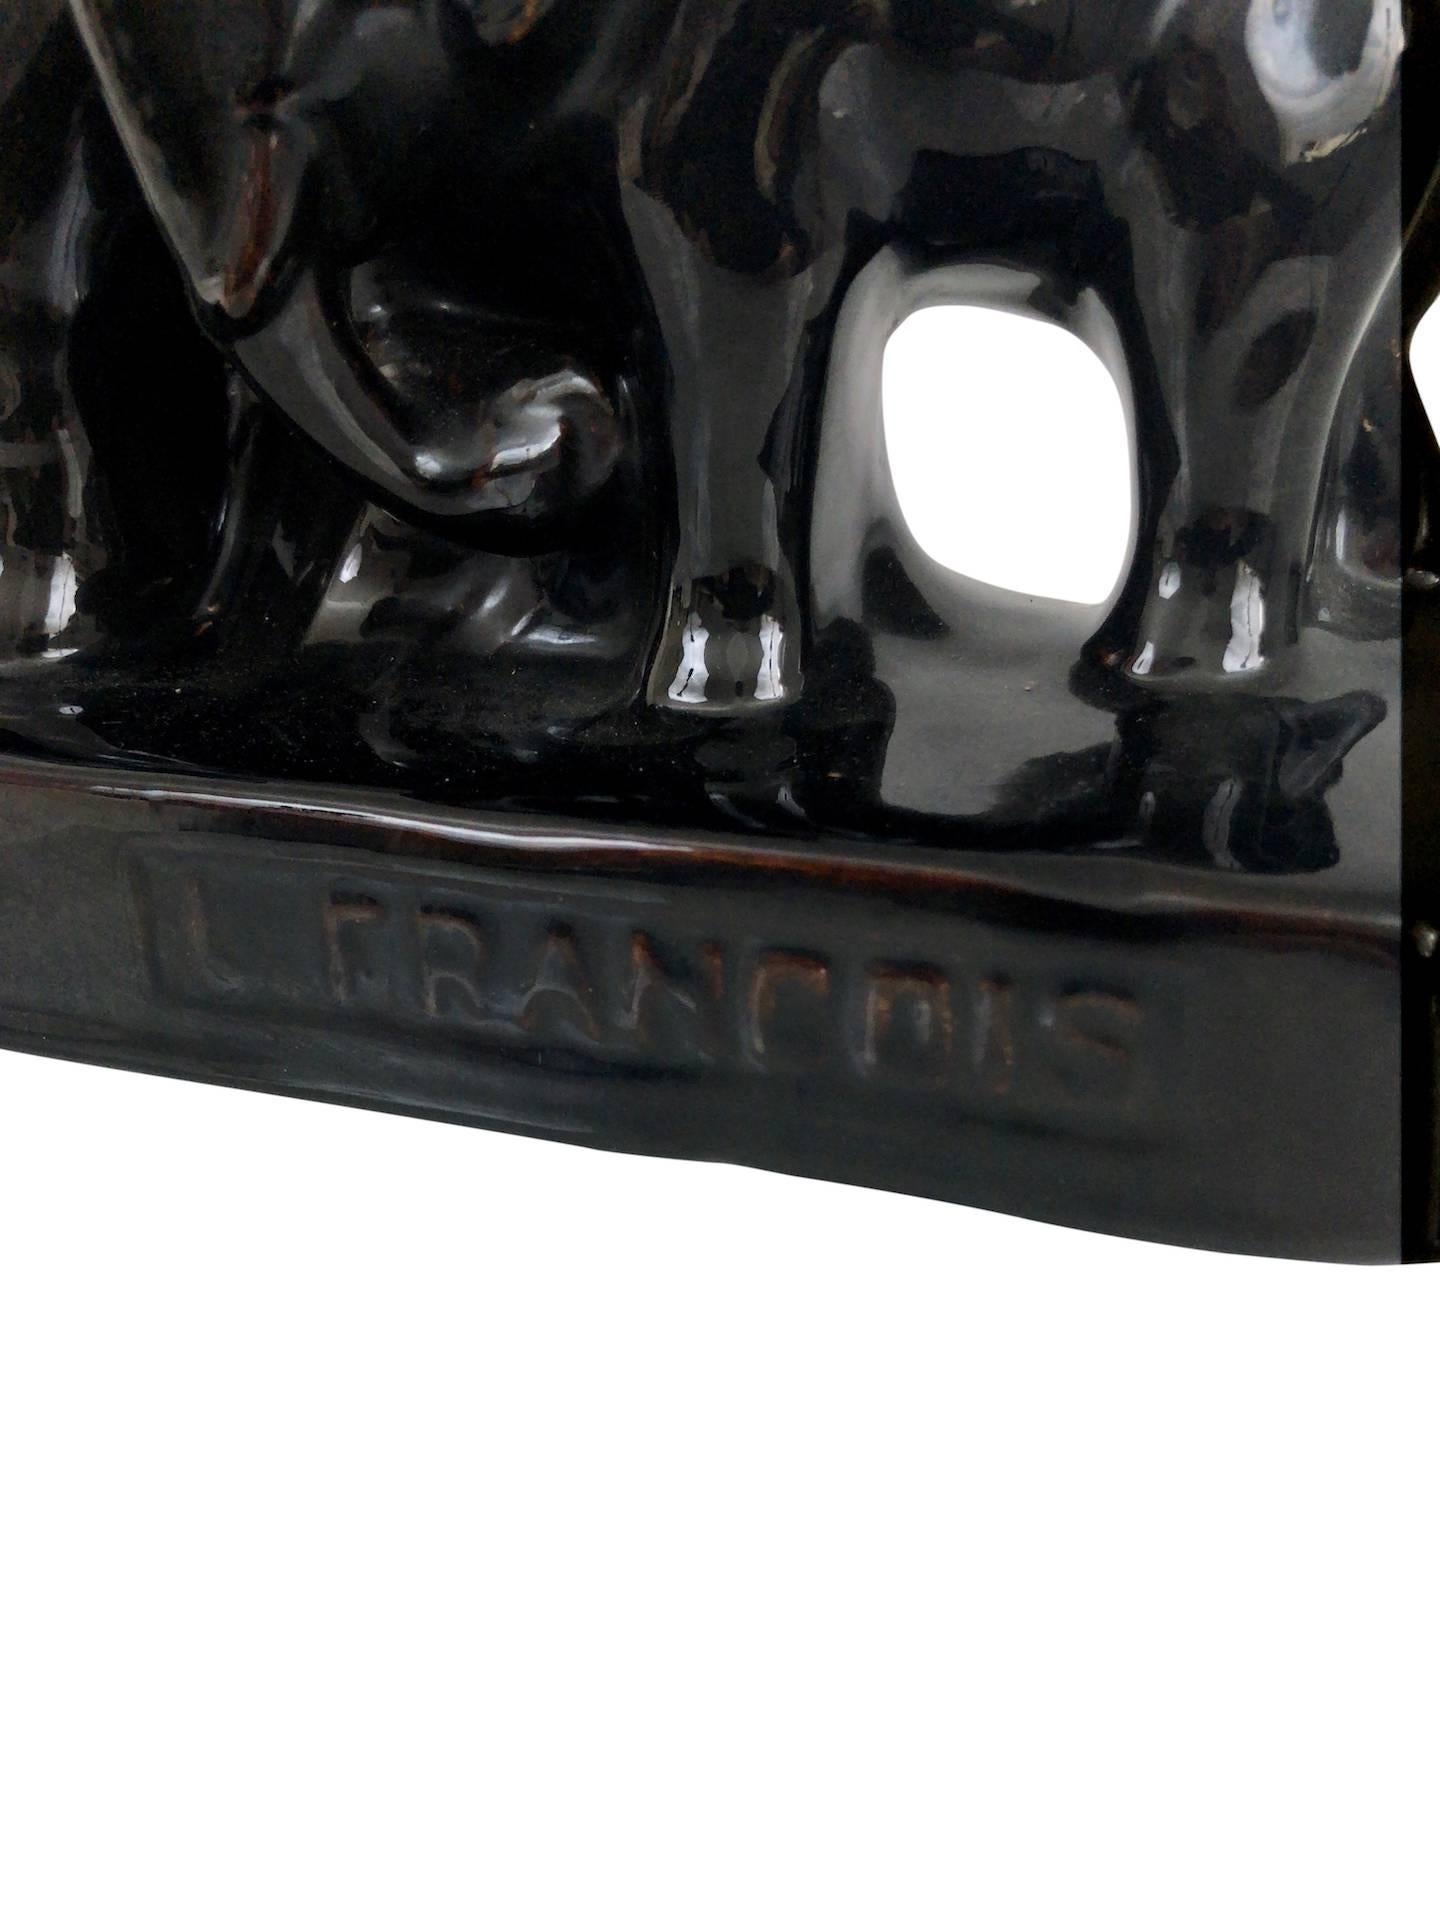 Schwarz glasierte Keramik Elefanten
unterzeichnet: L. Francois
Frankreich, 1930er Jahre

Abmessungen:
Breite 35 cm
Höhe 23 cm.
Tiefe: 9 cm